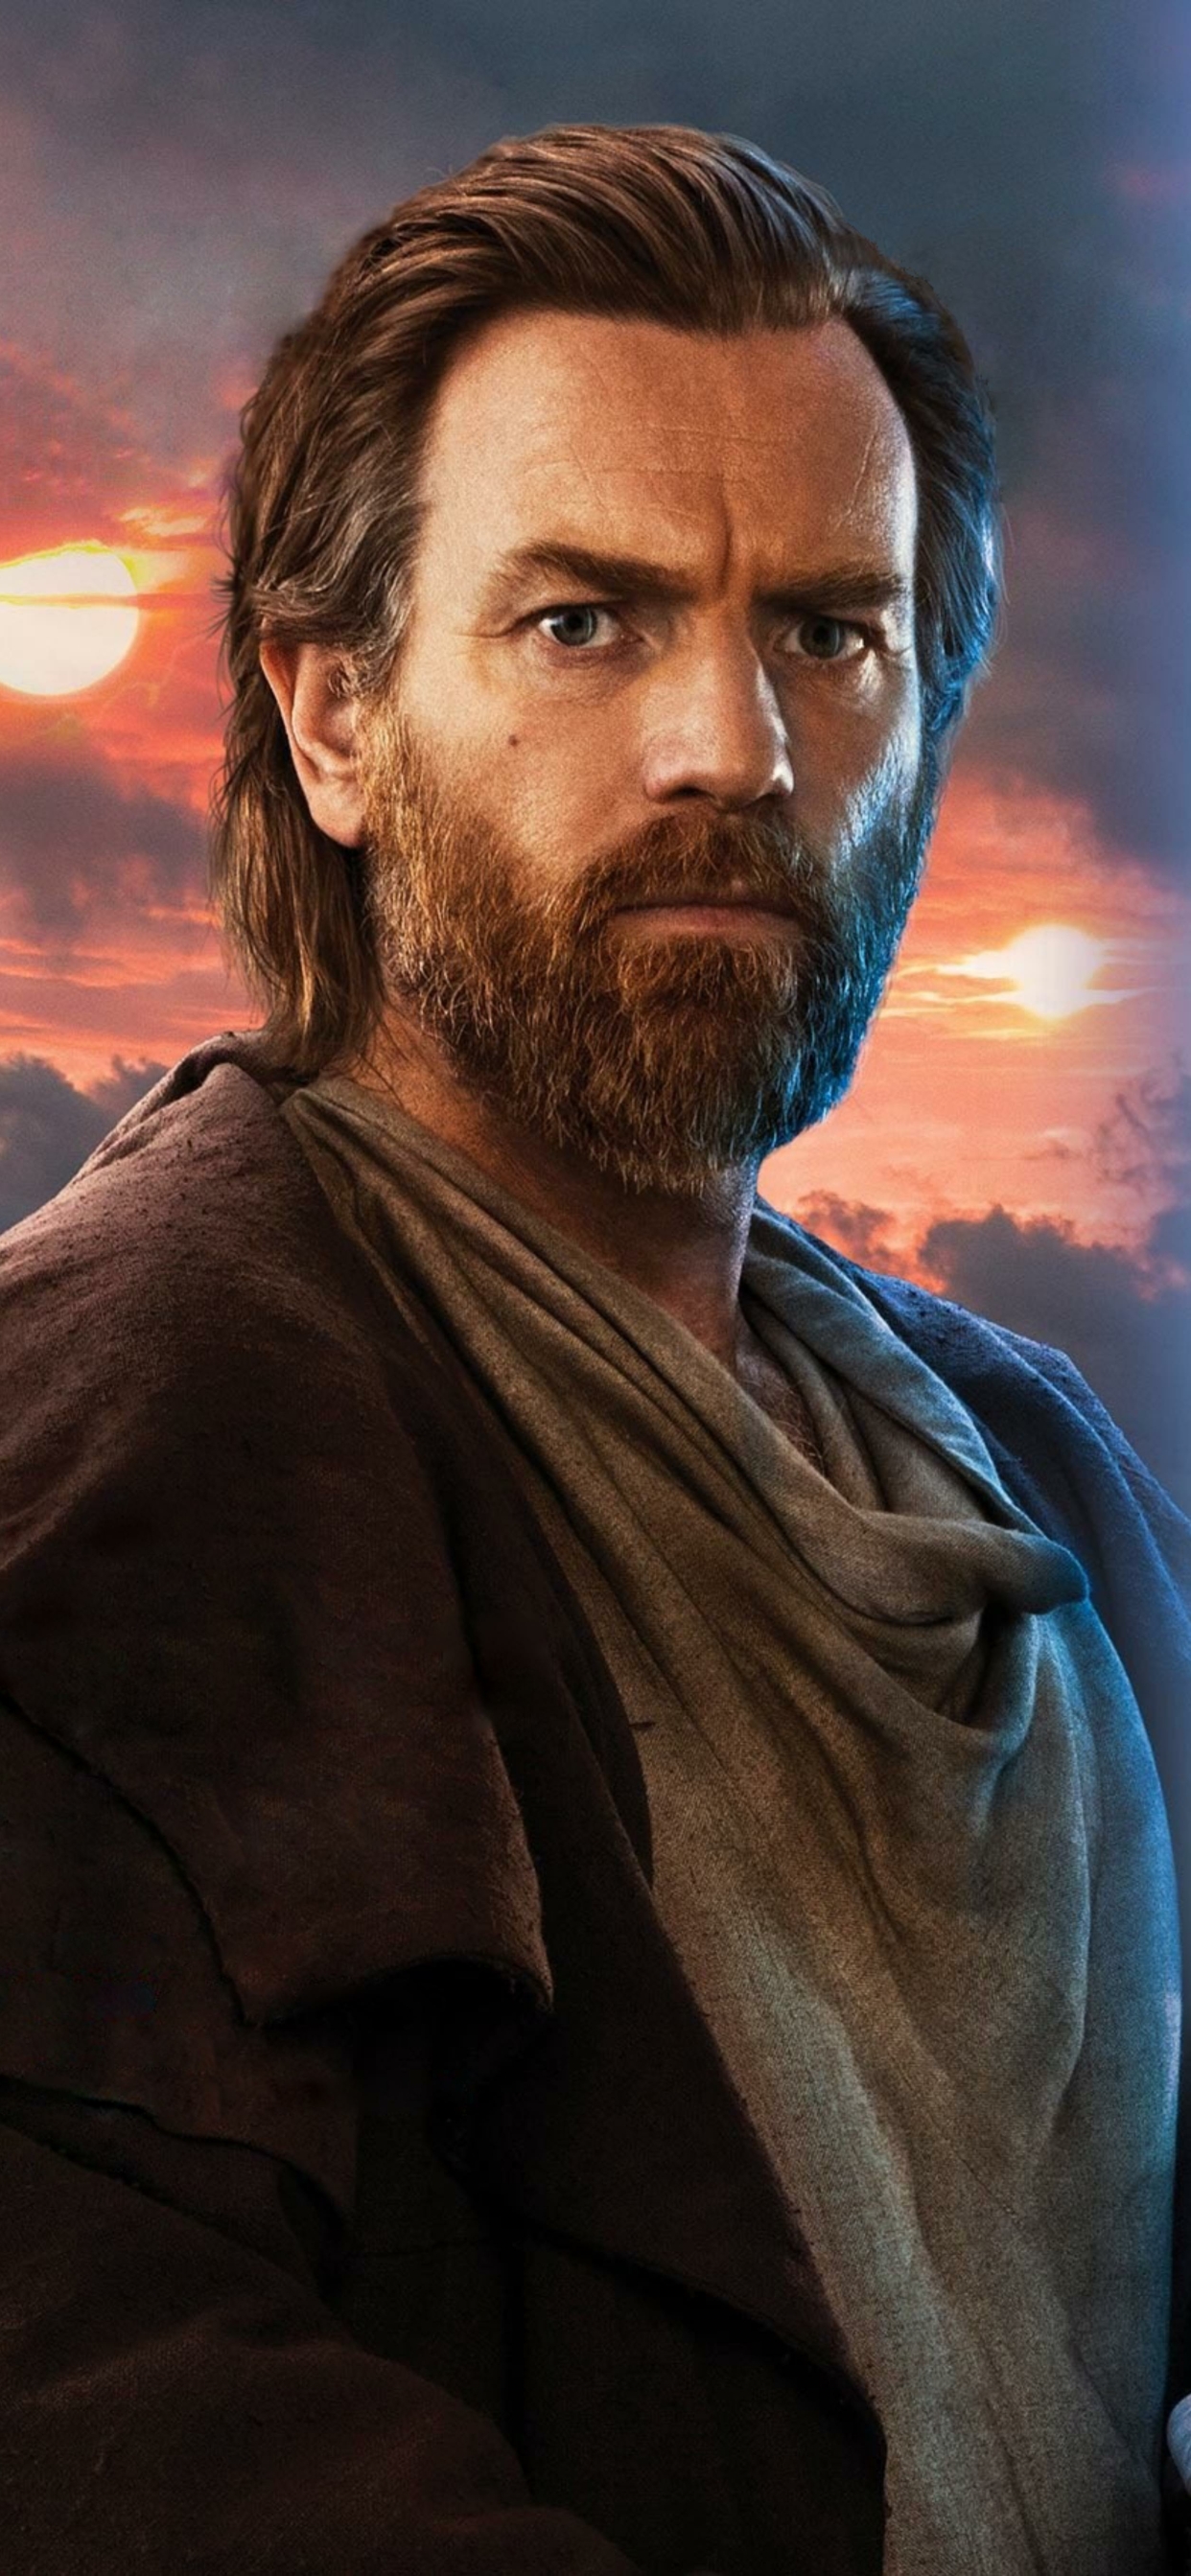 Obi Wan from Star Wars HD wallpaper  Wallpaper Flare